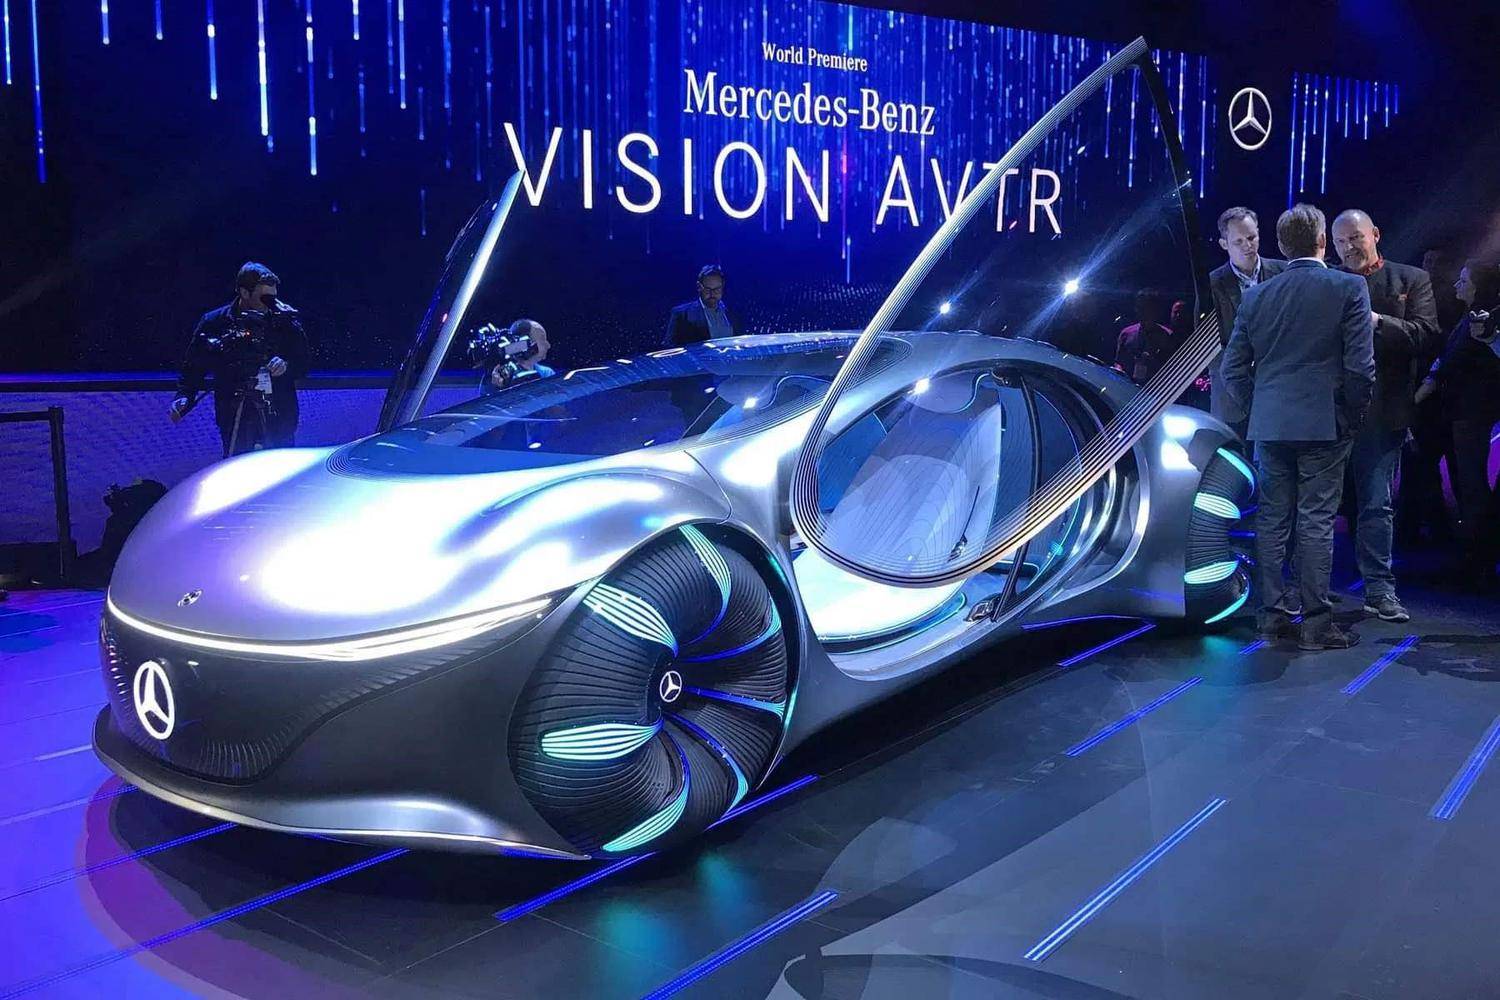 Vision van – малотоннажный автомобиль будущего от mercedes-benz